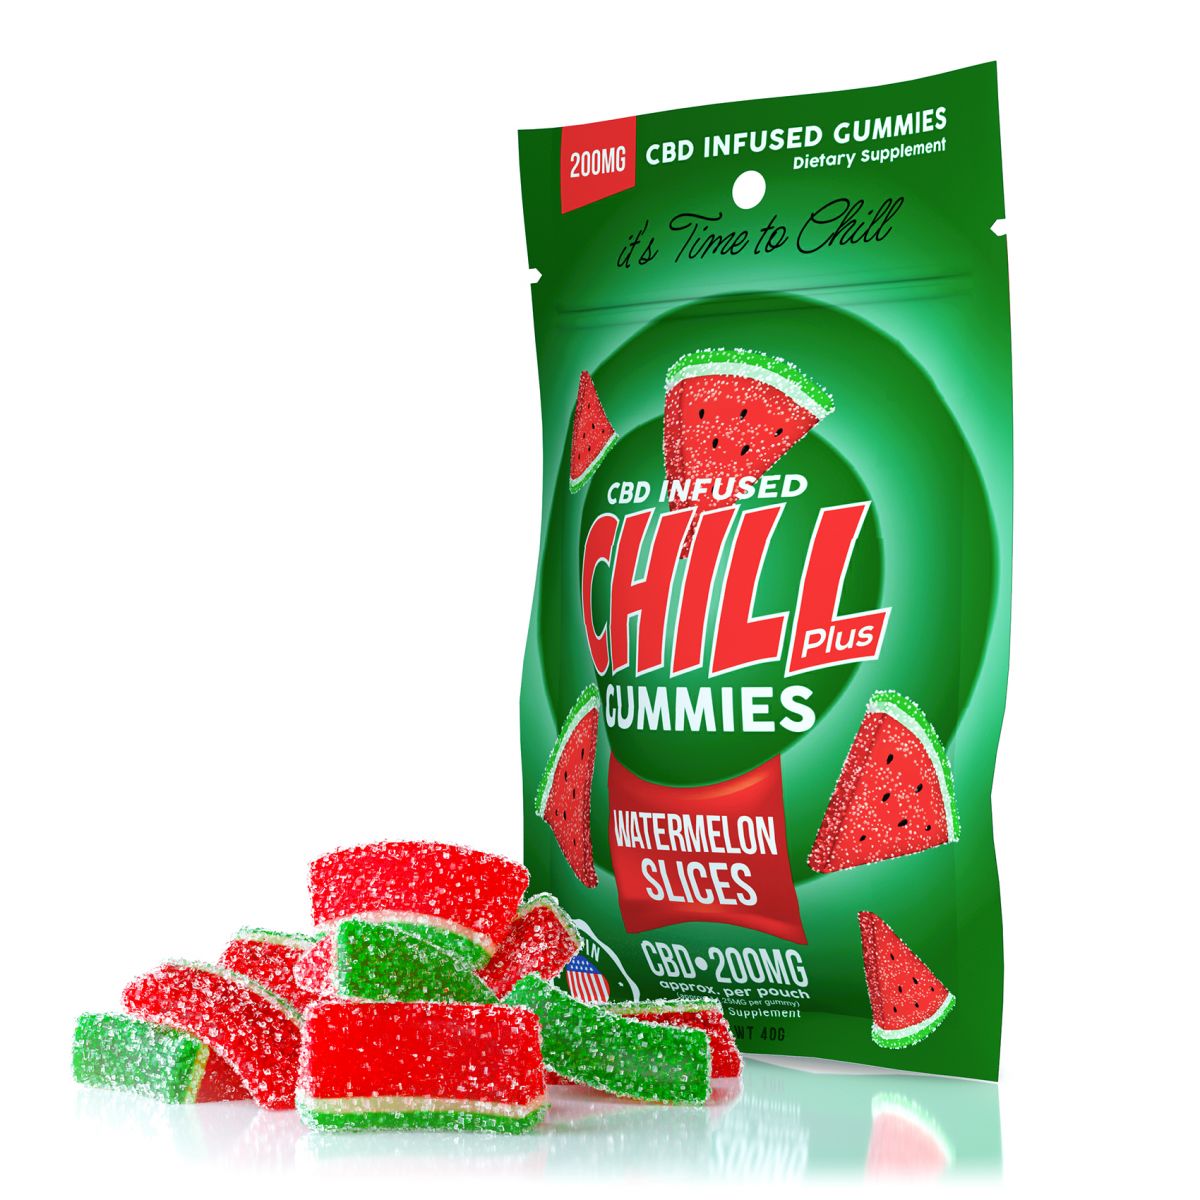 Chill Plus Gummies - برش های هندوانه تزریق شده با CBD